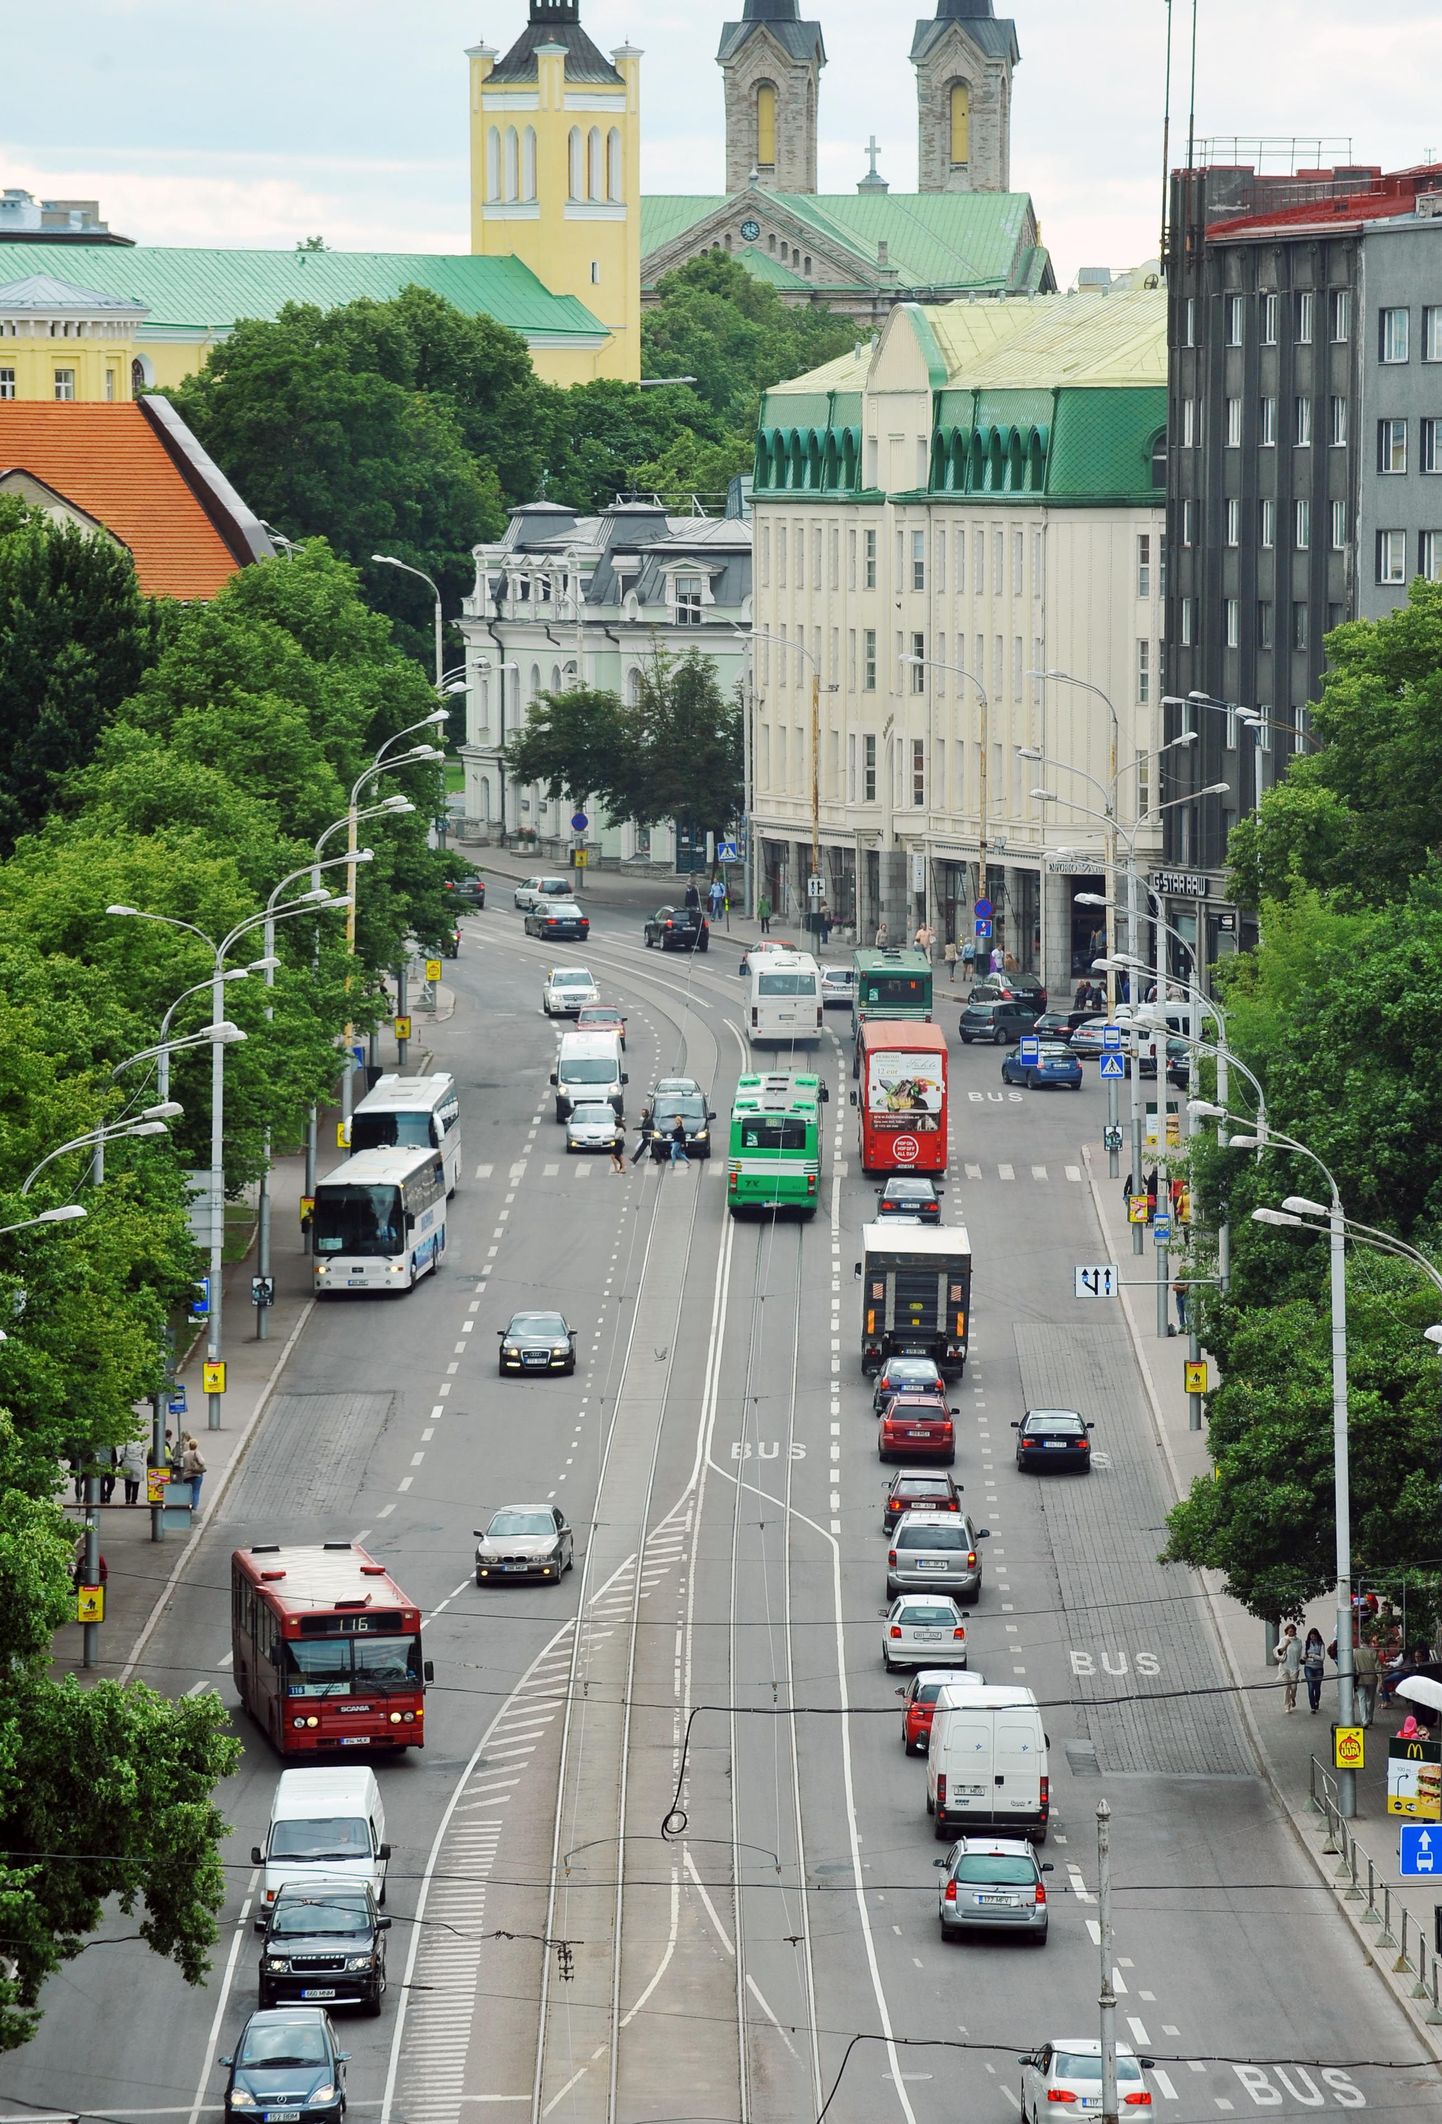 Üks keerulisemaid kohti seoses bussiradadega on Pärnu maantee alates Viru ringist linnast väljuval suunal.